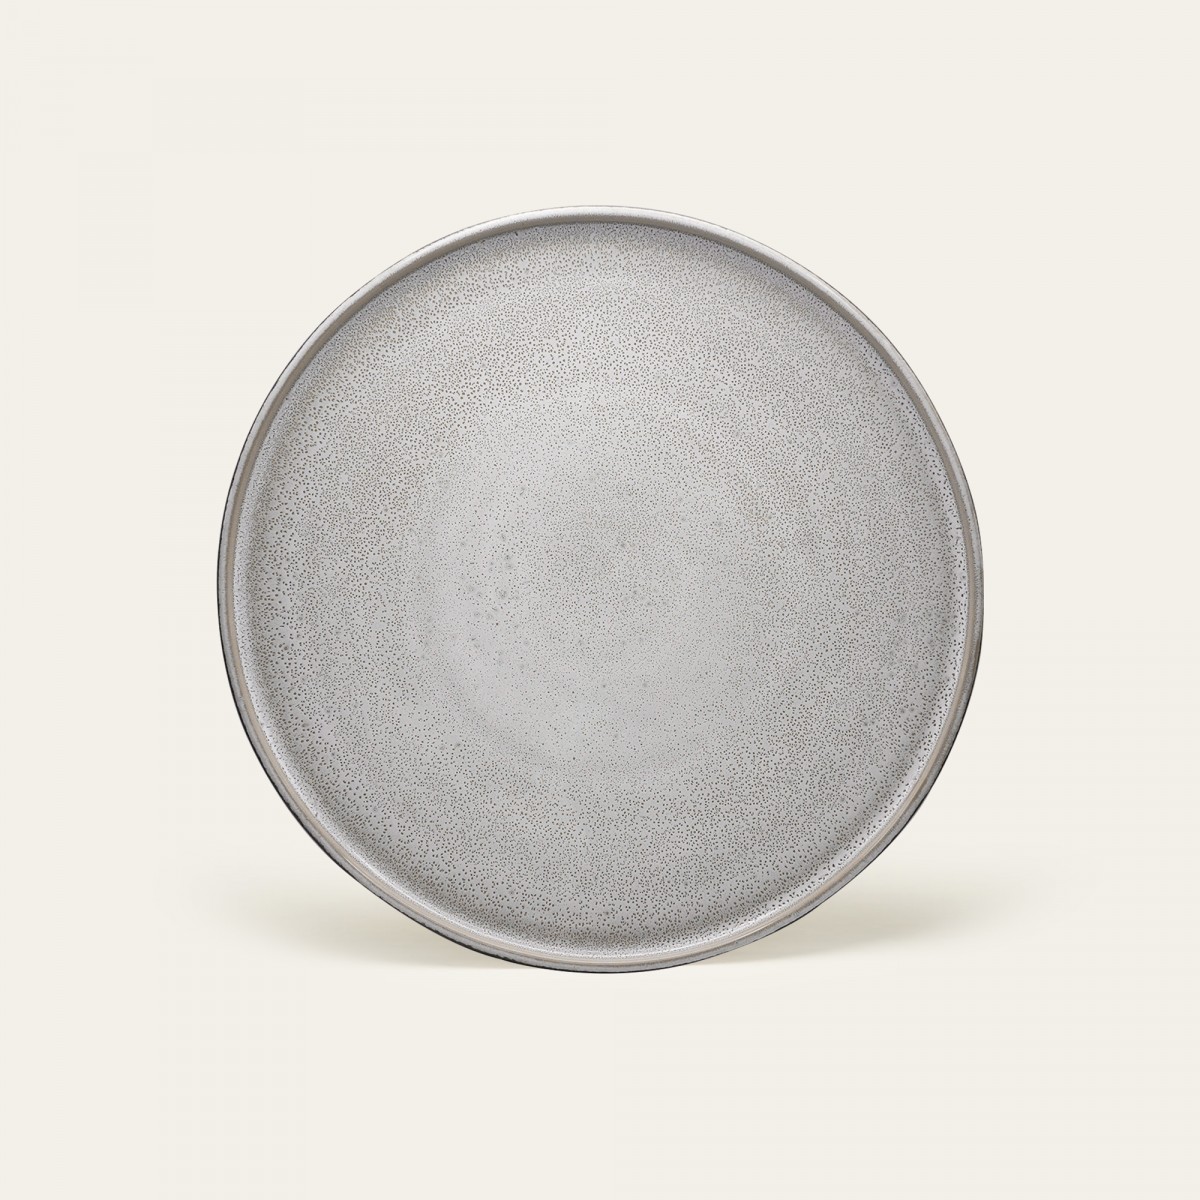 Handgemachter Steingut Teller Ddoria groß - Granit Grau - EDDA stoneware